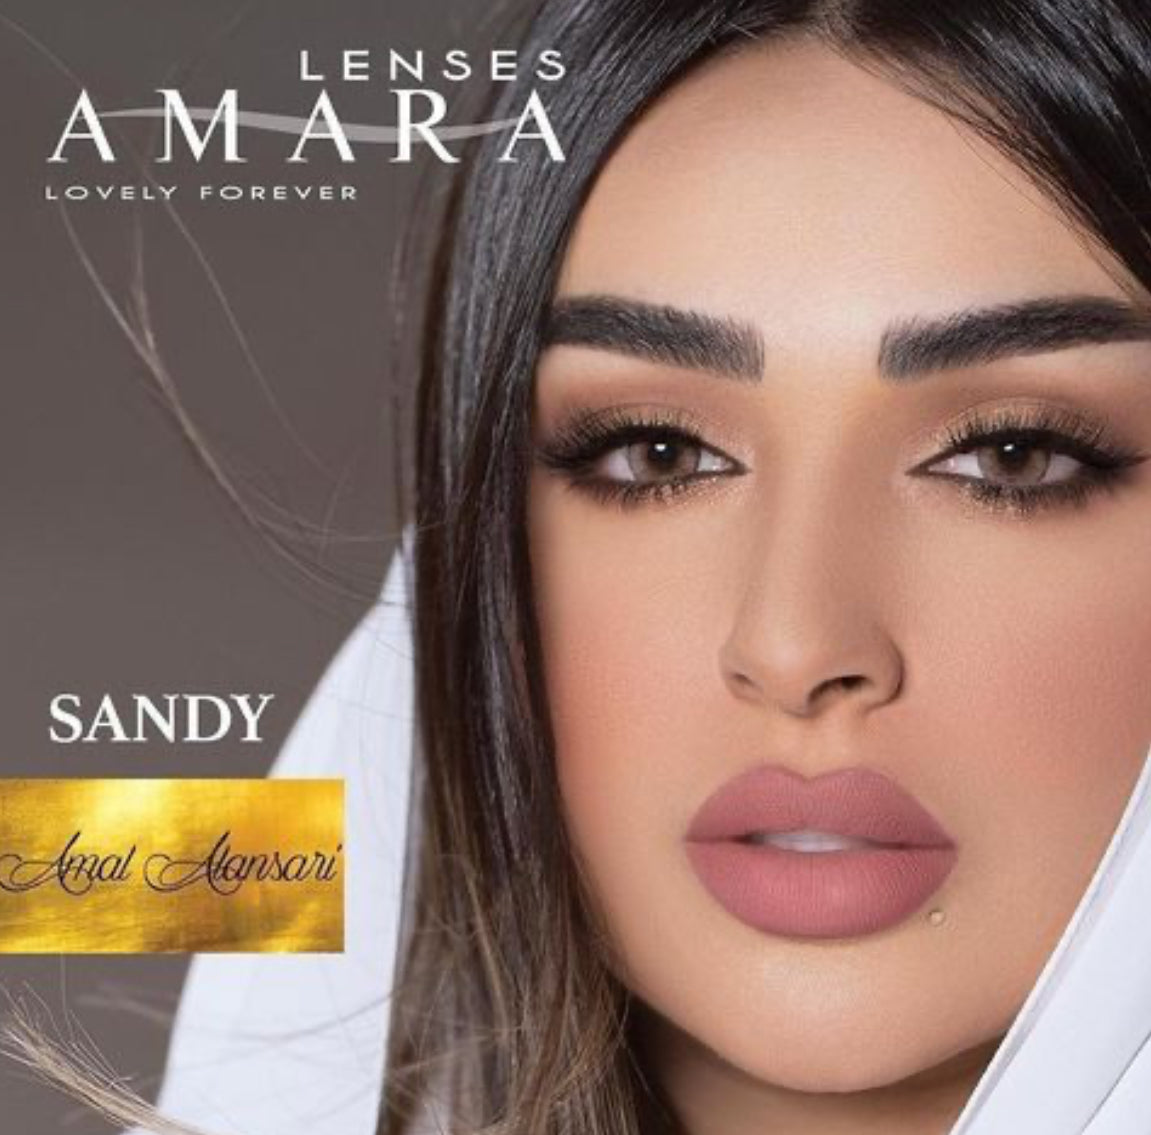 Amara Sandy @ امارا - ساندي